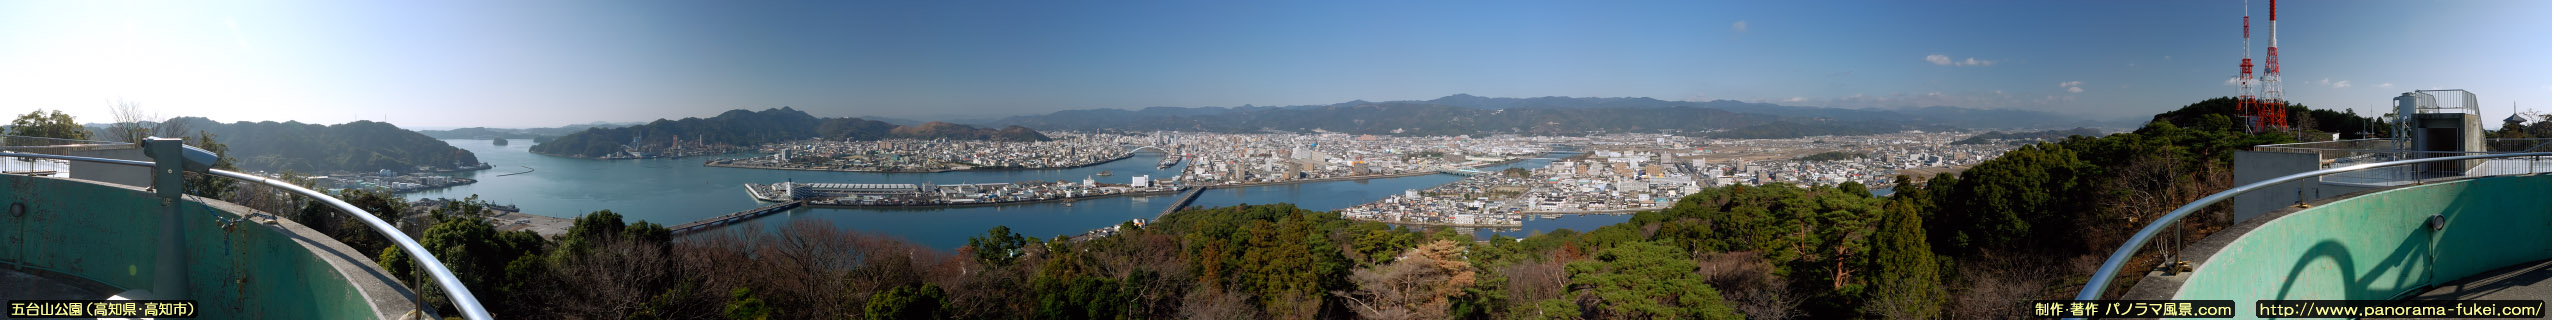 五台山展望台から望む高知市街と浦戸湾のパノラマ風景写真